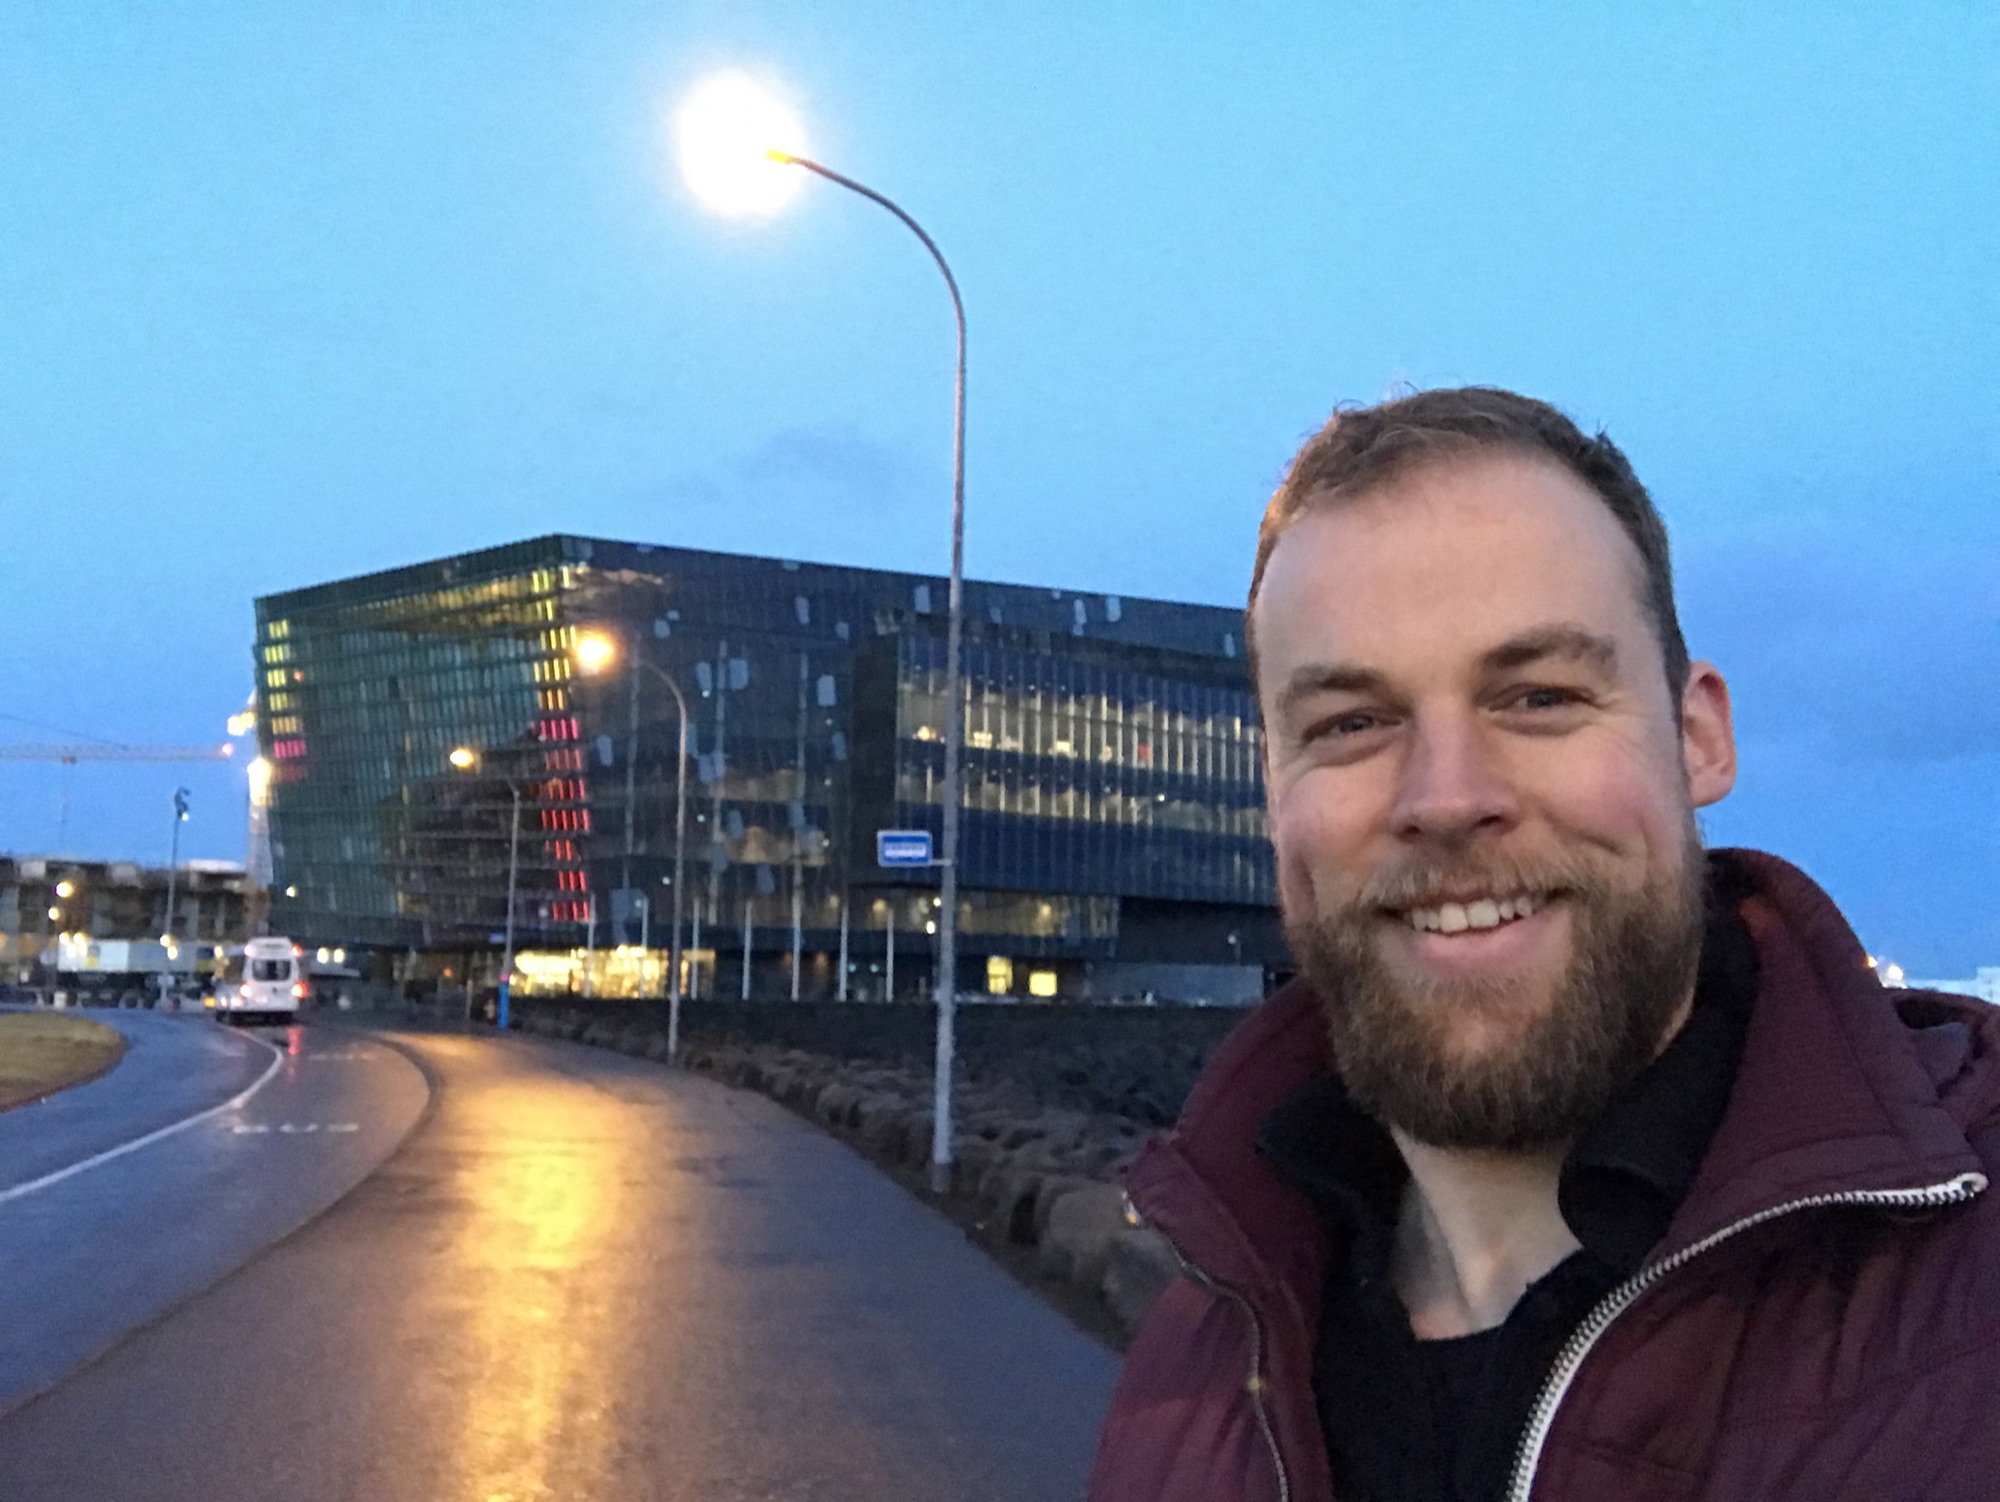 Epal Harpa concert building in Reykjavik